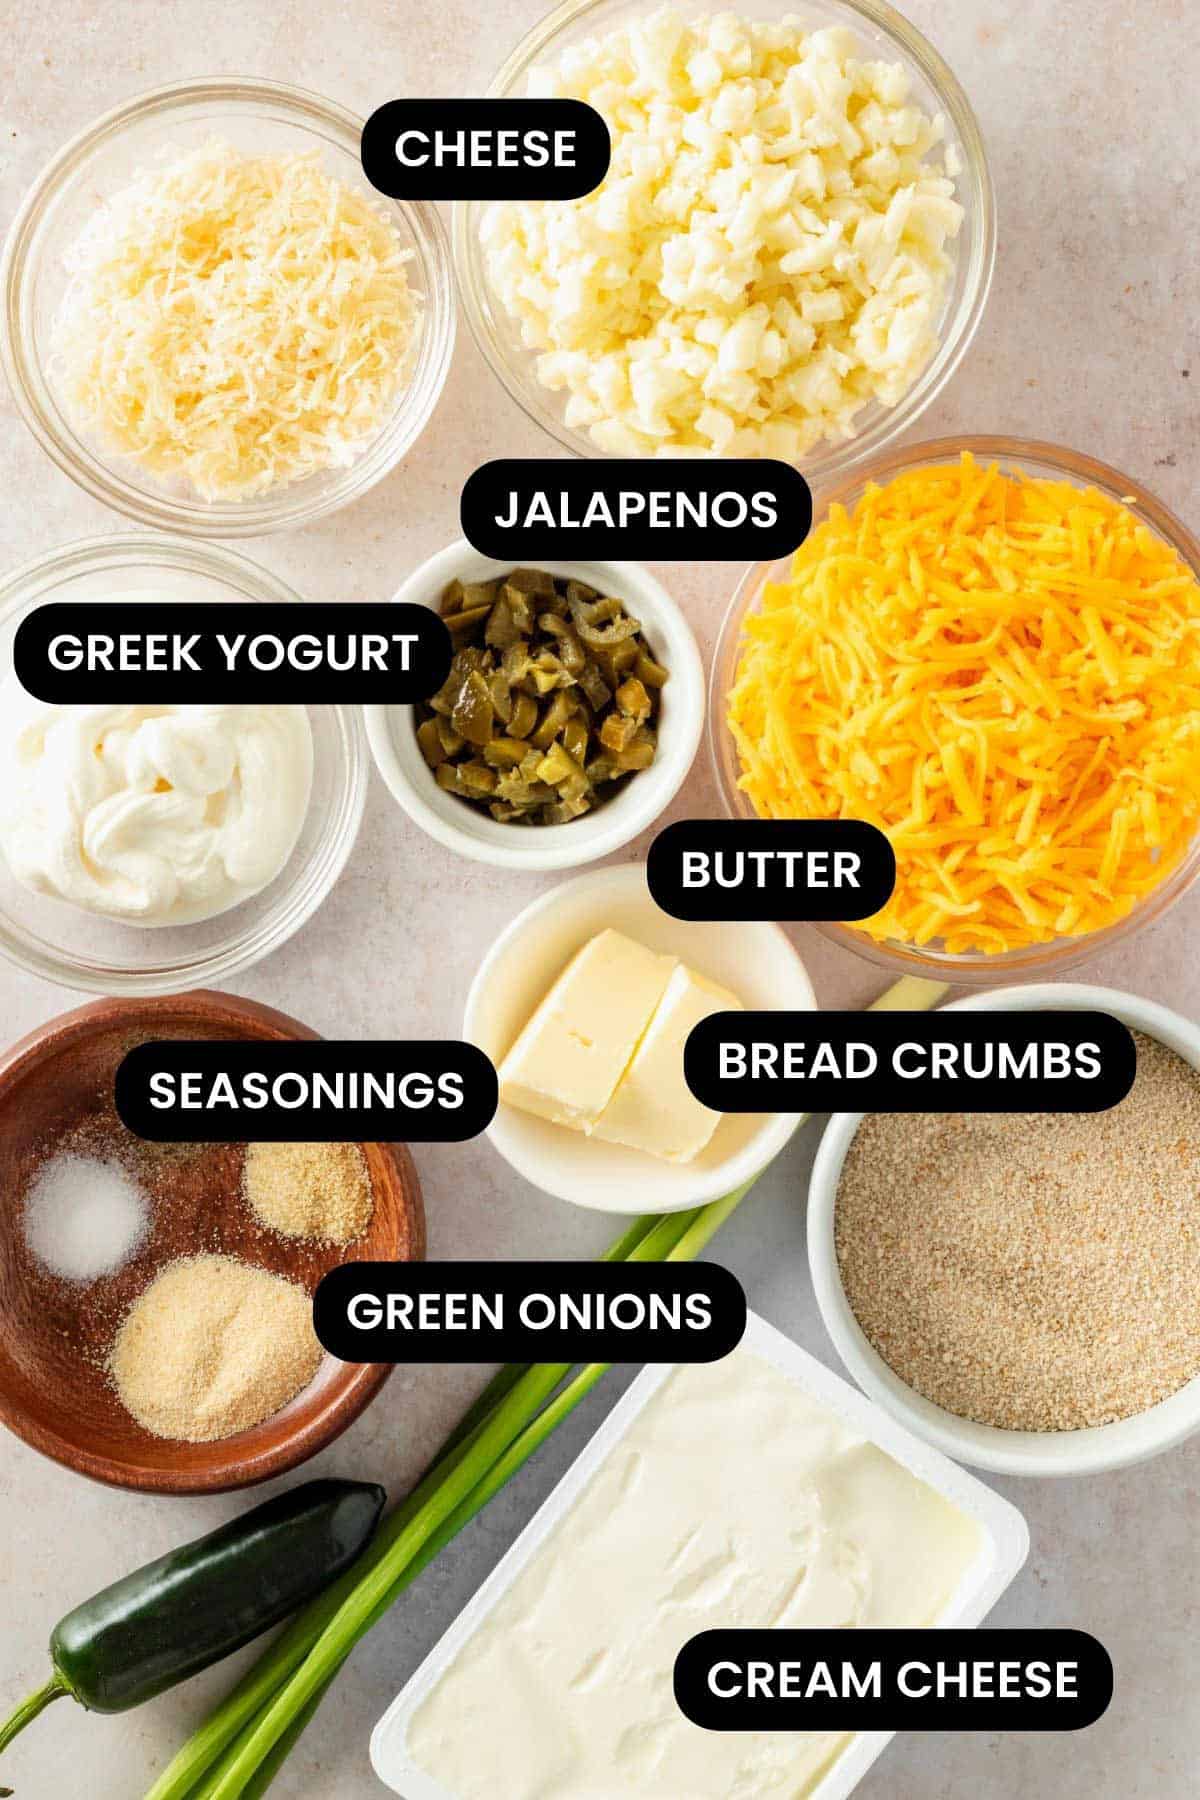 ingredients for jalapeno dip.